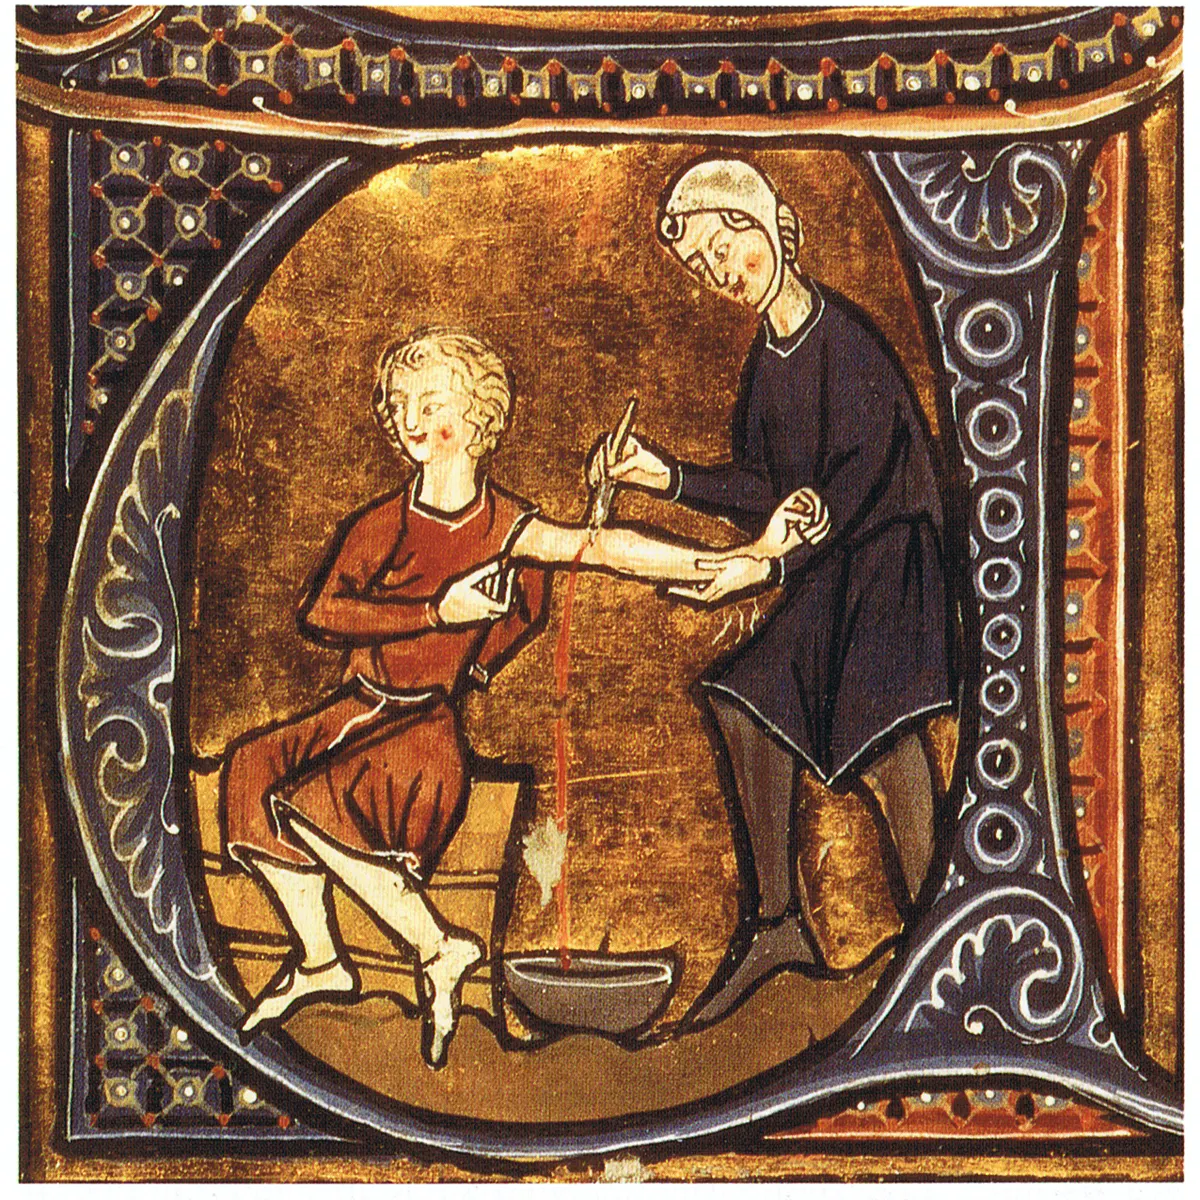 https://historyforkids.org/wp-content/uploads/2021/11/Medieval-Medicine-Facts-for-Kids-png1-1.png